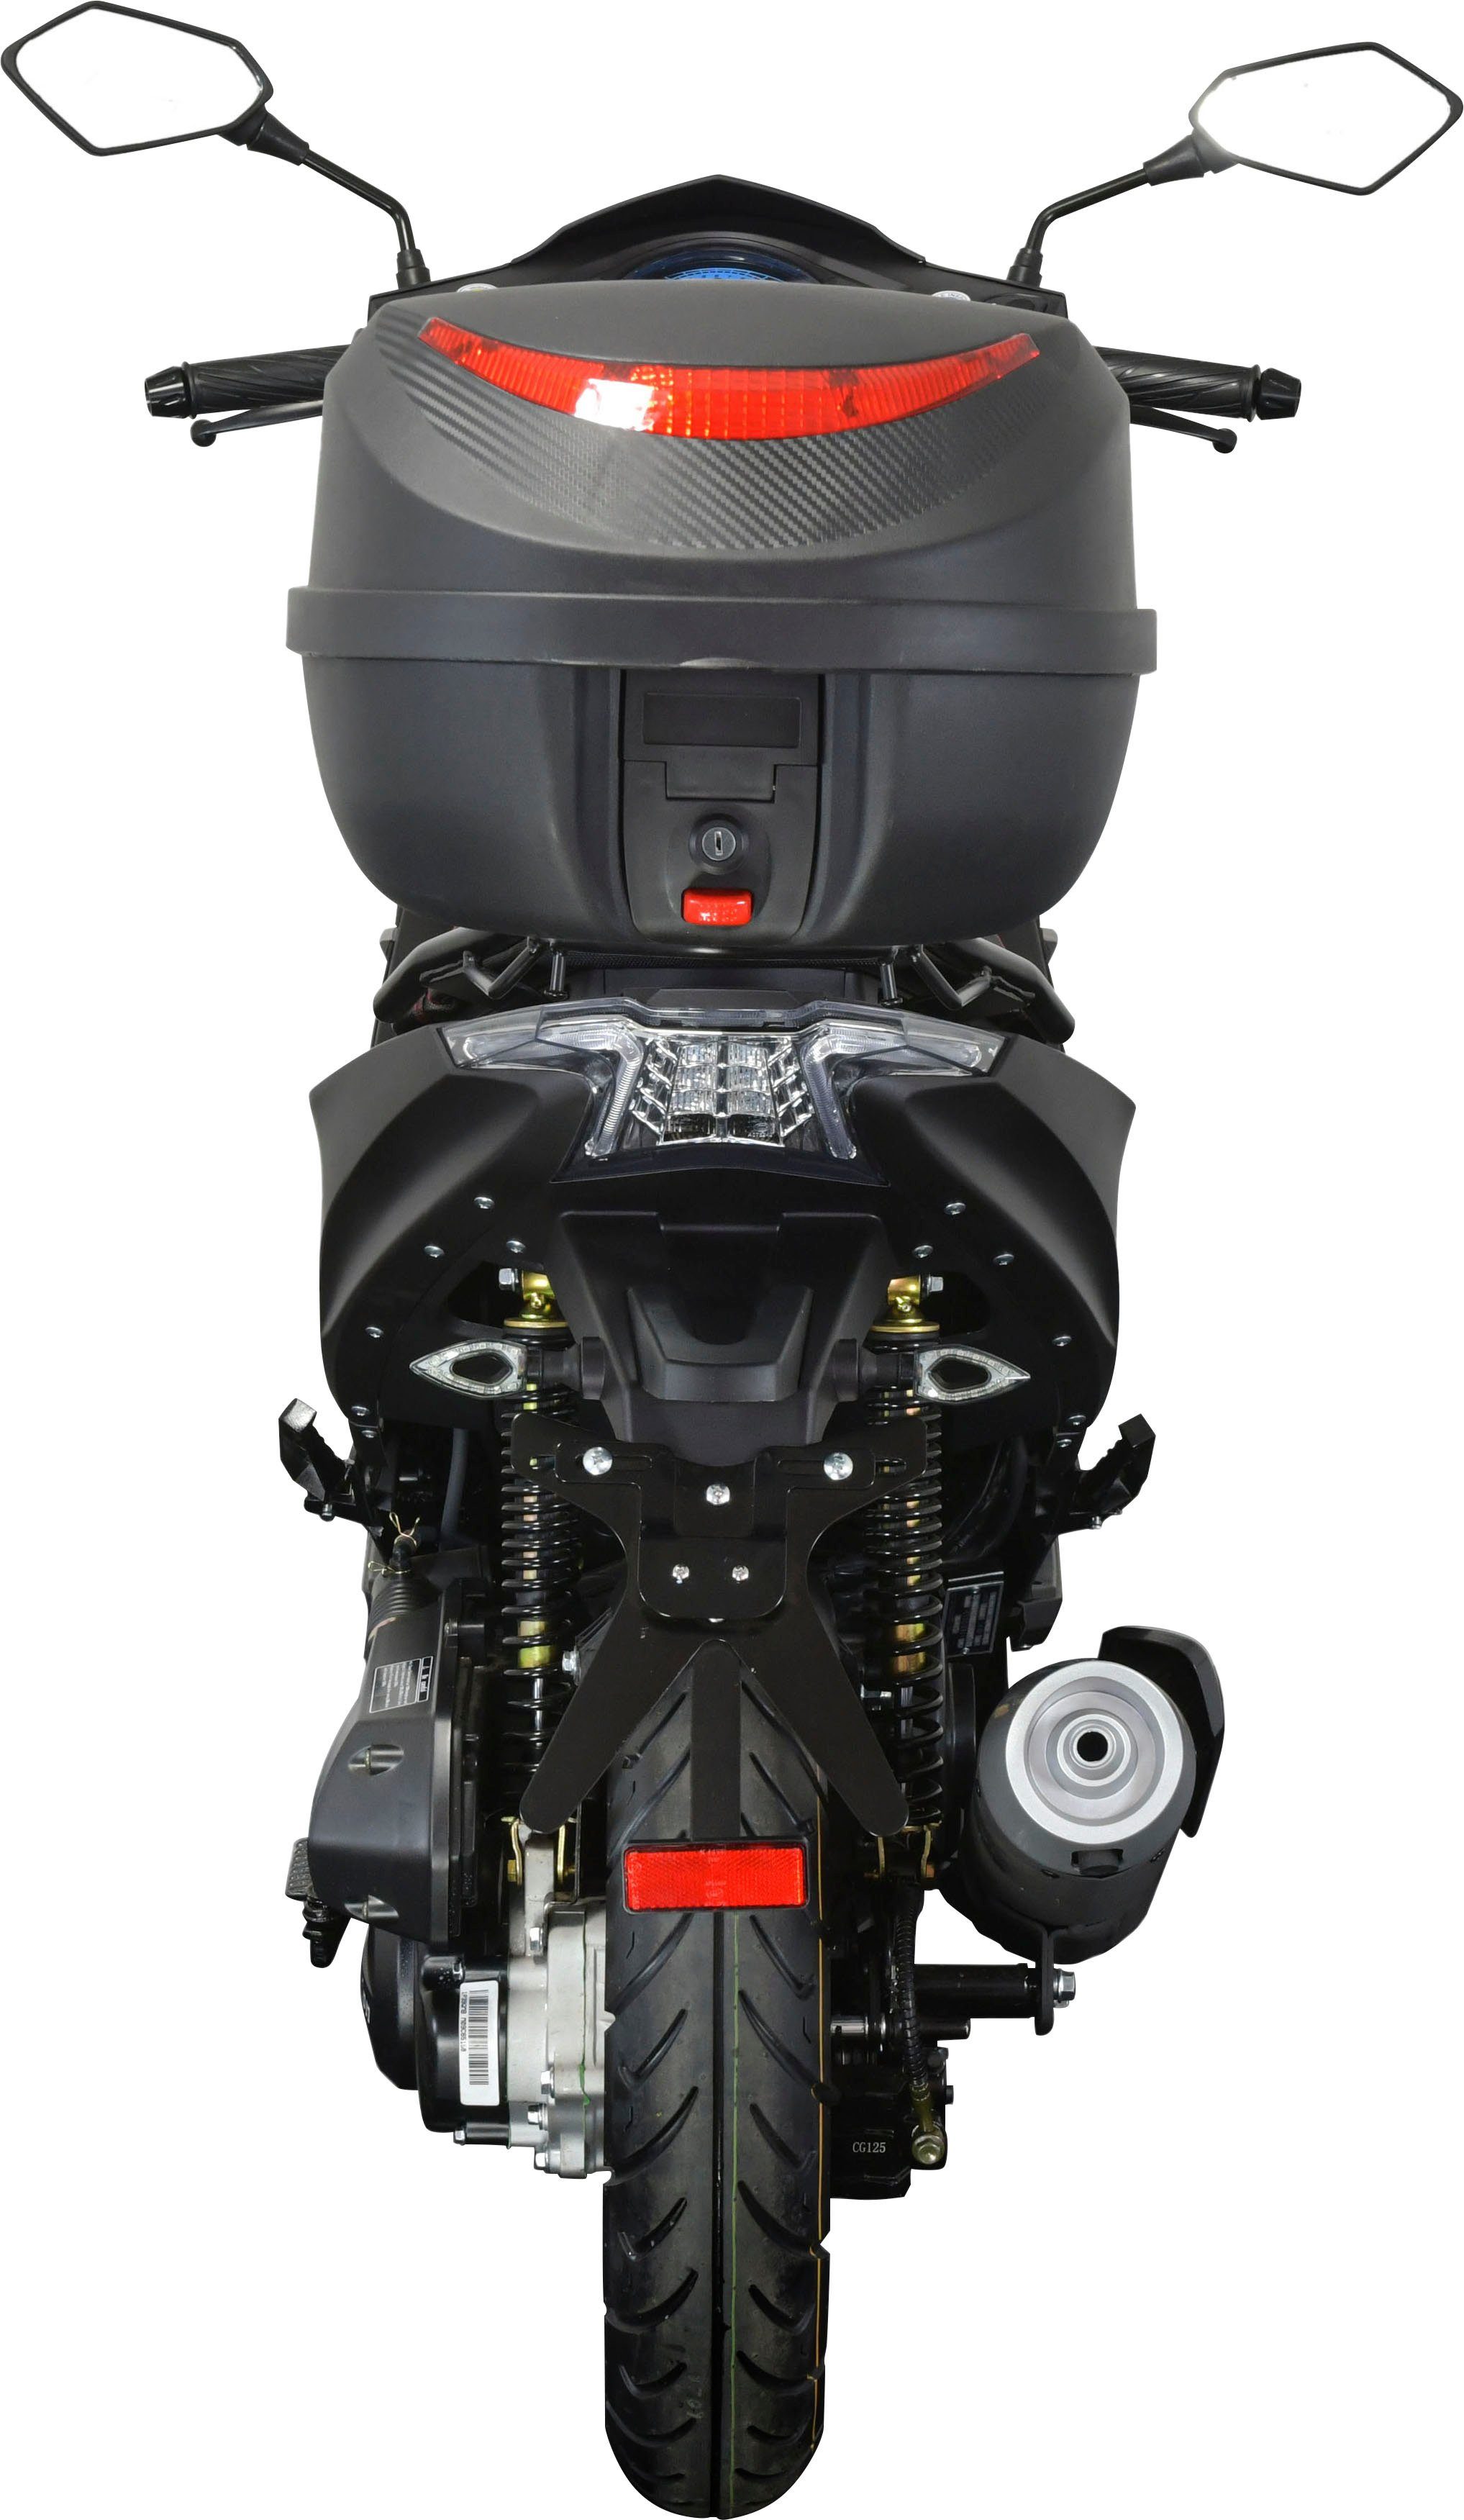 GT UNION Motorroller Striker, 50 mit 45 (Set), schwarz Topcase ccm, Euro km/h, 5